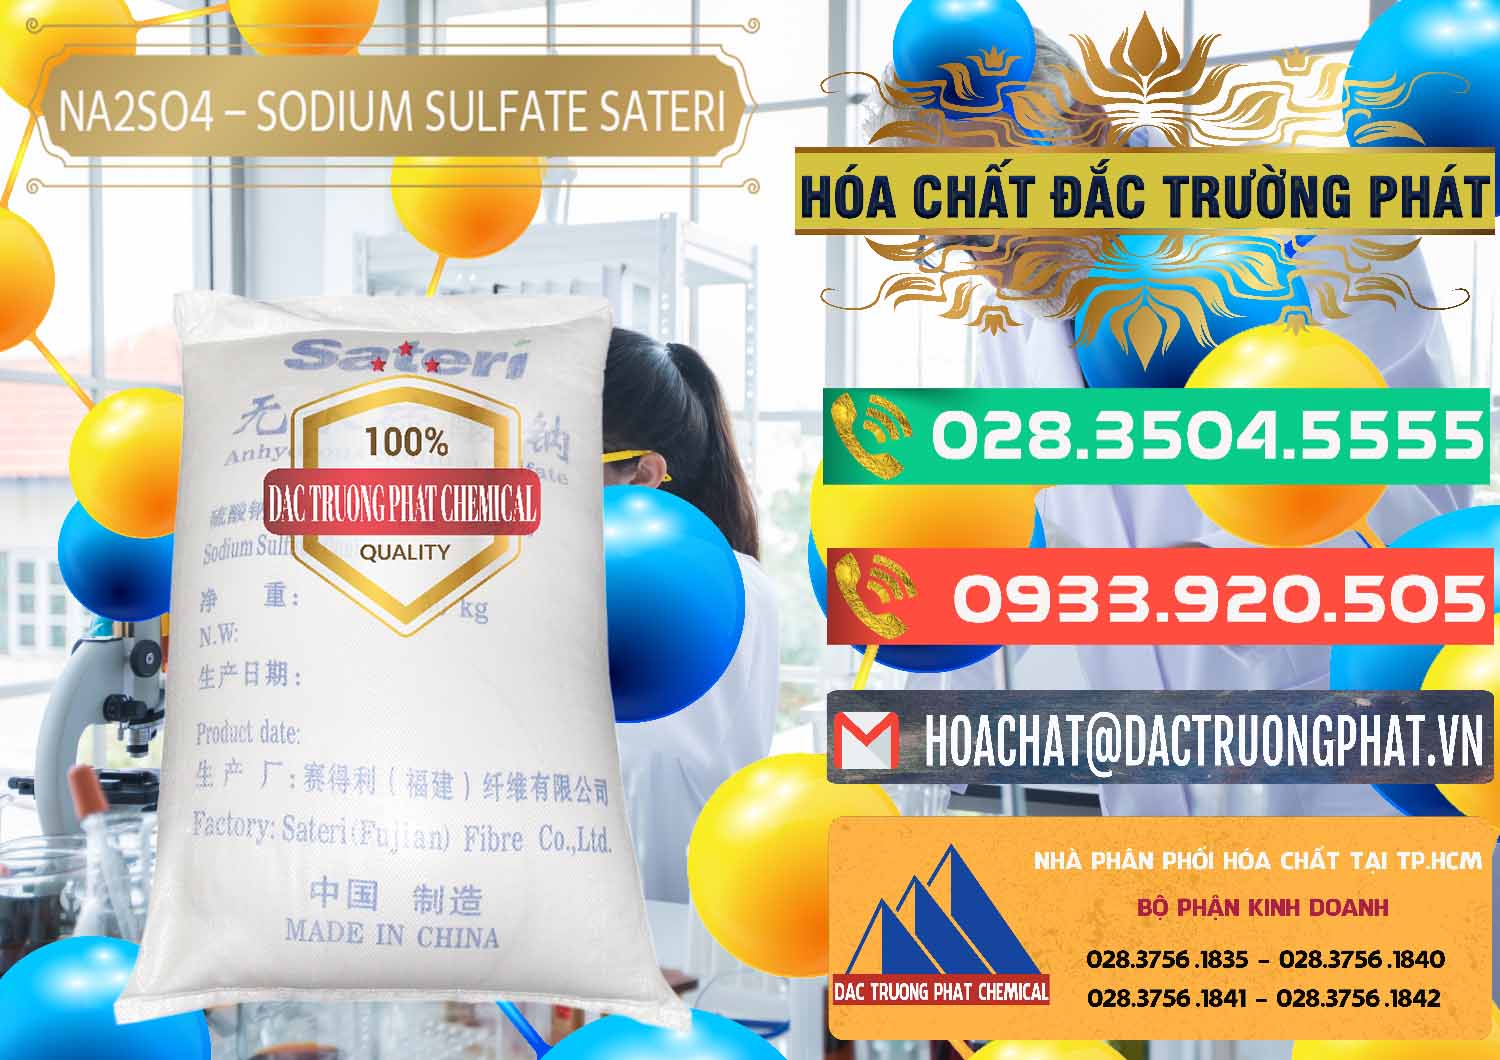 Nơi chuyên kinh doanh ( bán ) Sodium Sulphate - Muối Sunfat Na2SO4 Sateri Trung Quốc China - 0100 - Cty phân phối ( bán ) hóa chất tại TP.HCM - congtyhoachat.com.vn